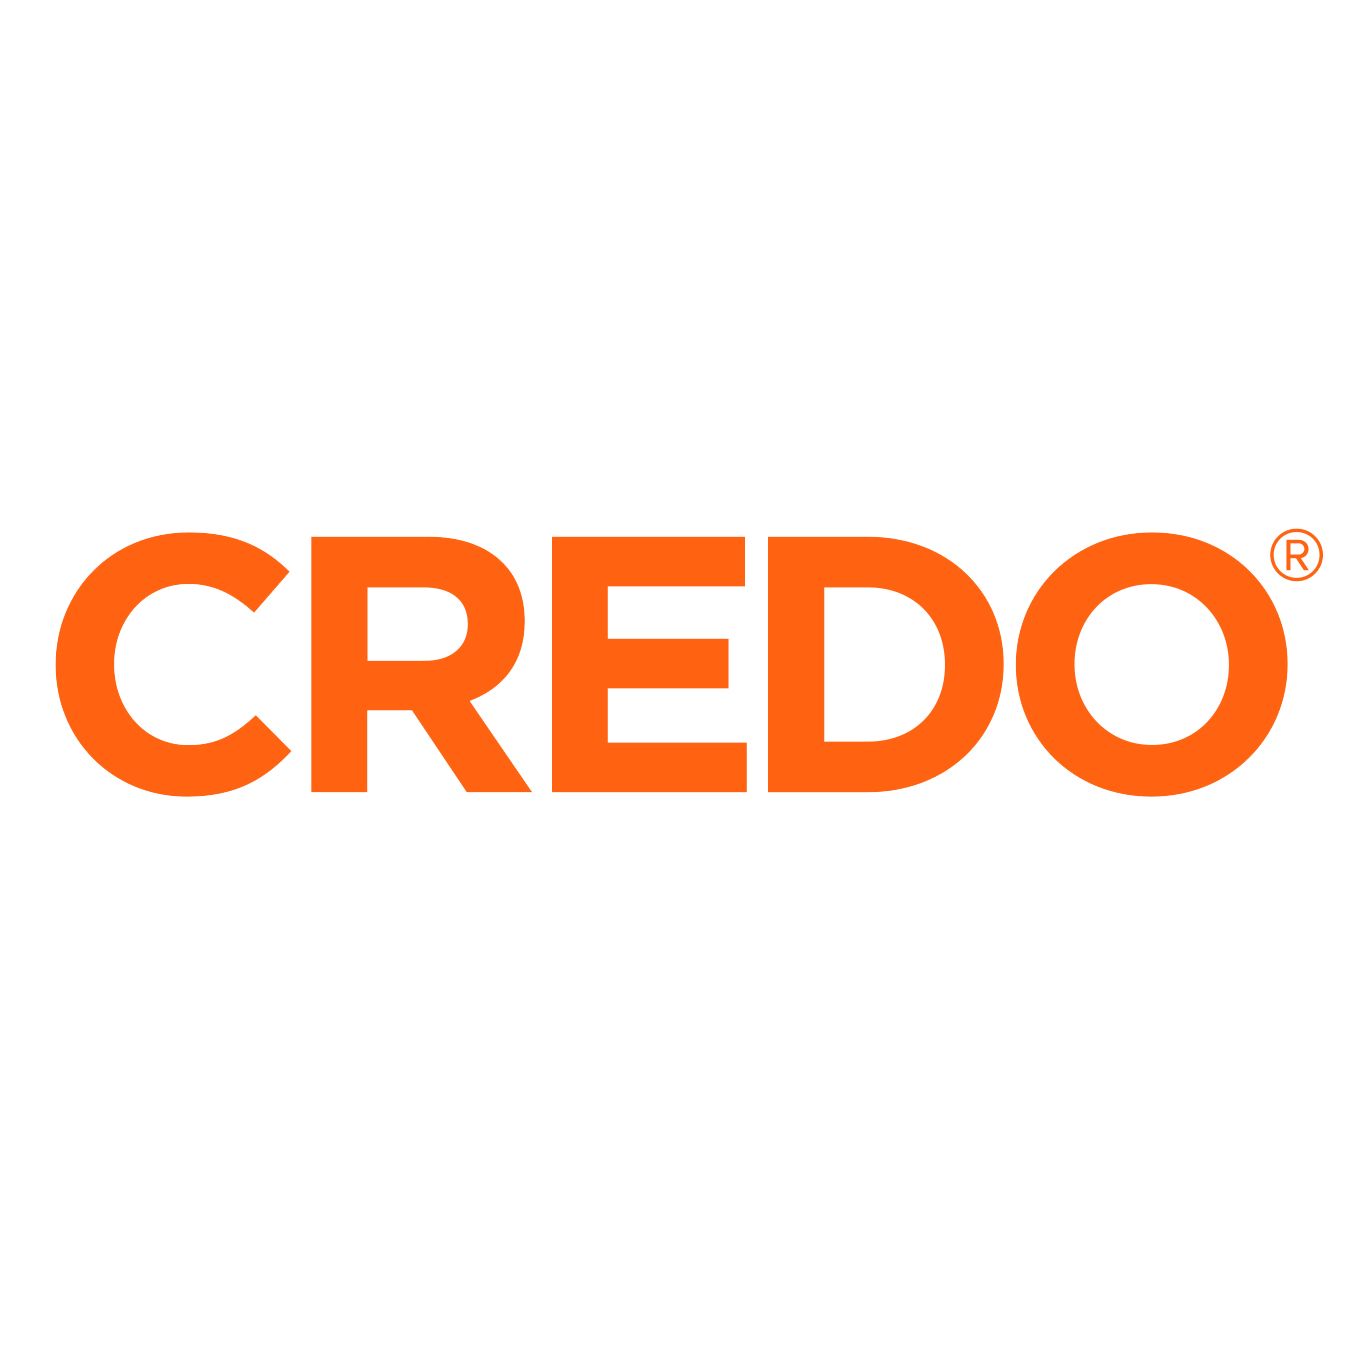 Tipo de logotipo Credo Mobile